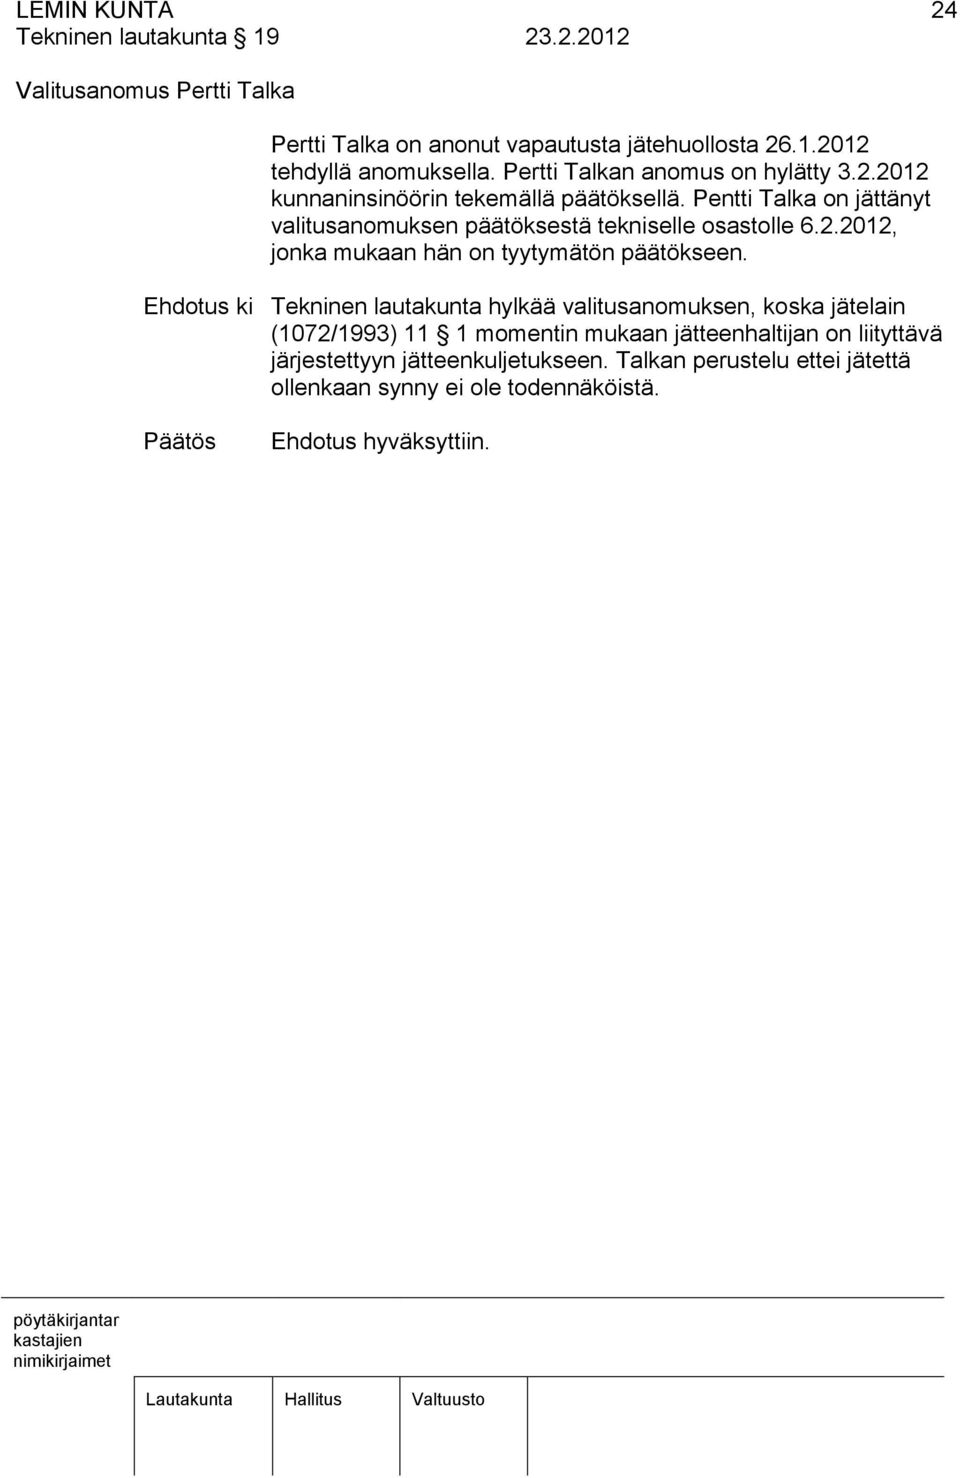 Pentti Talka on jättänyt valitusanomuksen päätöksestä tekniselle osastolle 6.2.2012, jonka mukaan hän on tyytymätön päätökseen.